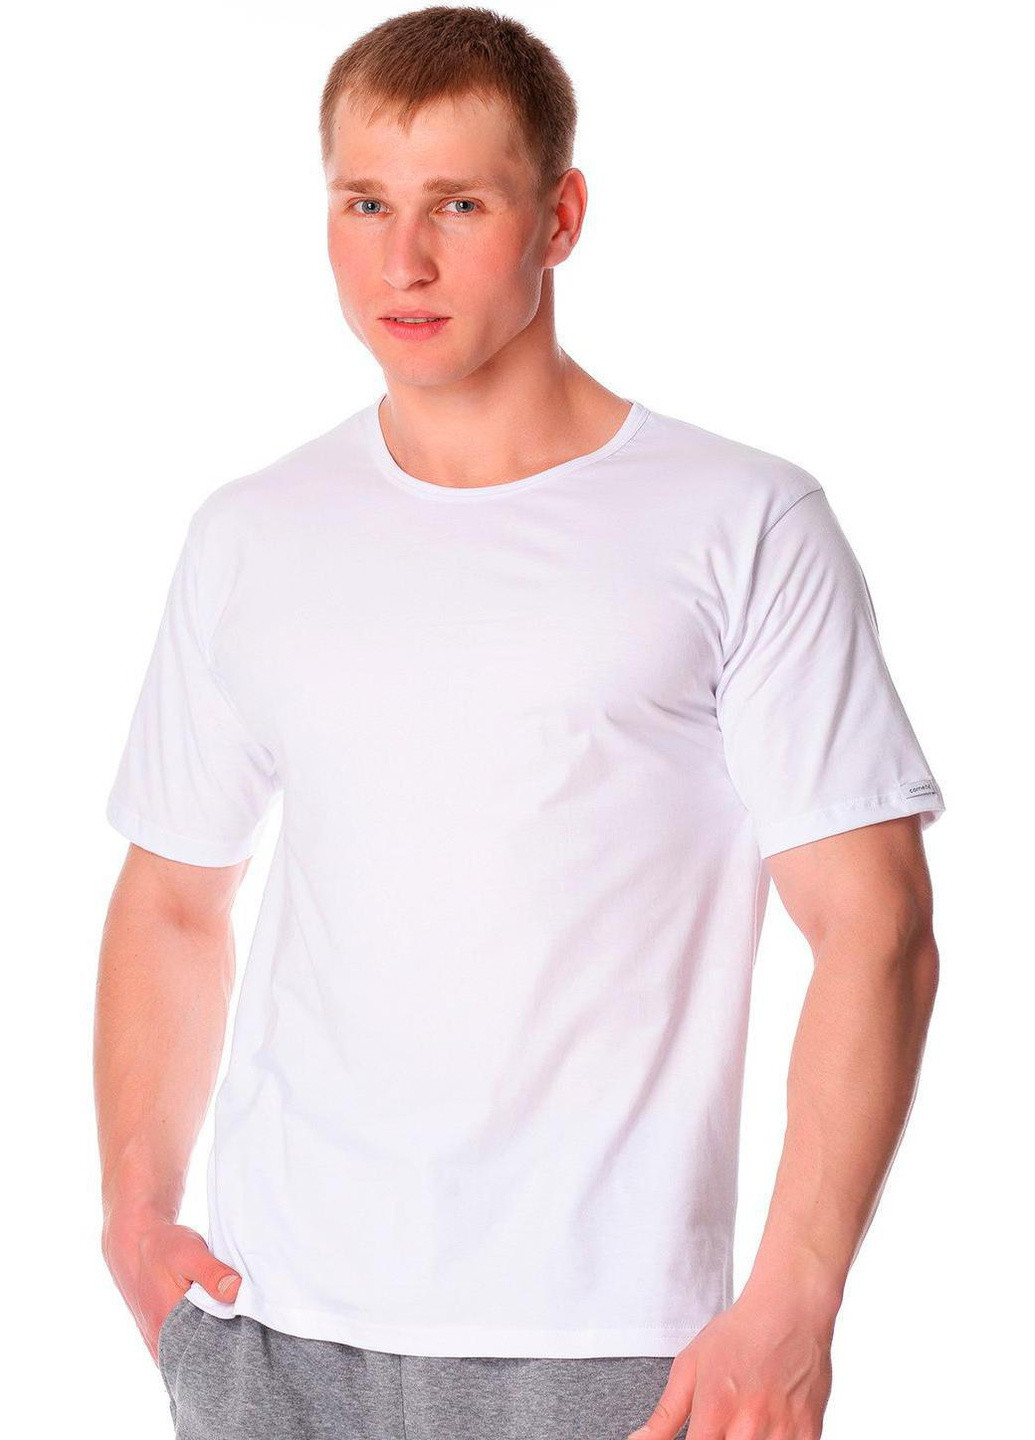 Біла футболка чоловіча ariston білий 202 Cornette